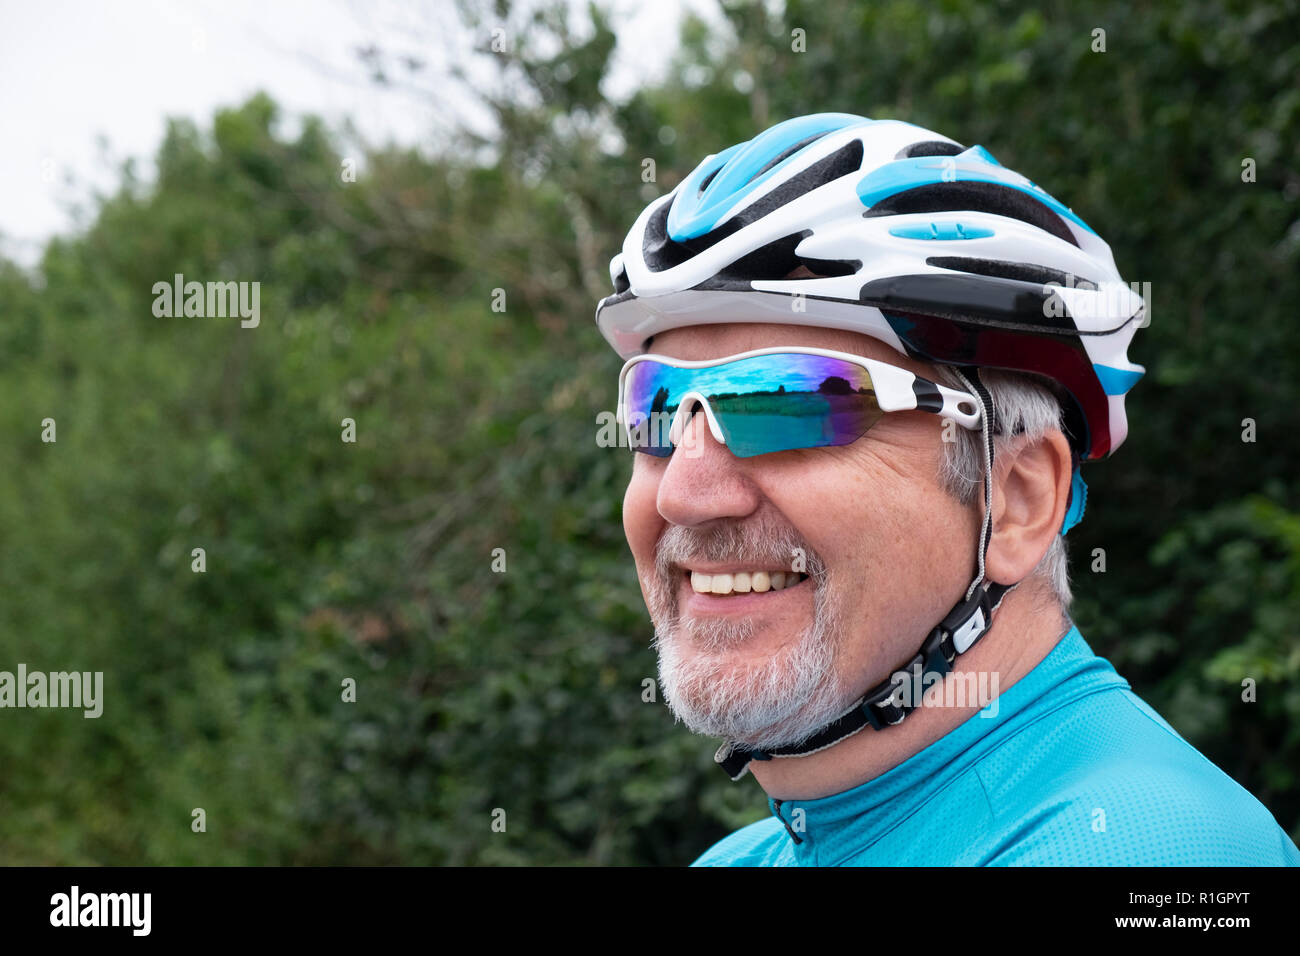 Ältere männliche Radfahrer Closeup Portrait, Mann, Helm und Brille, Stockfoto